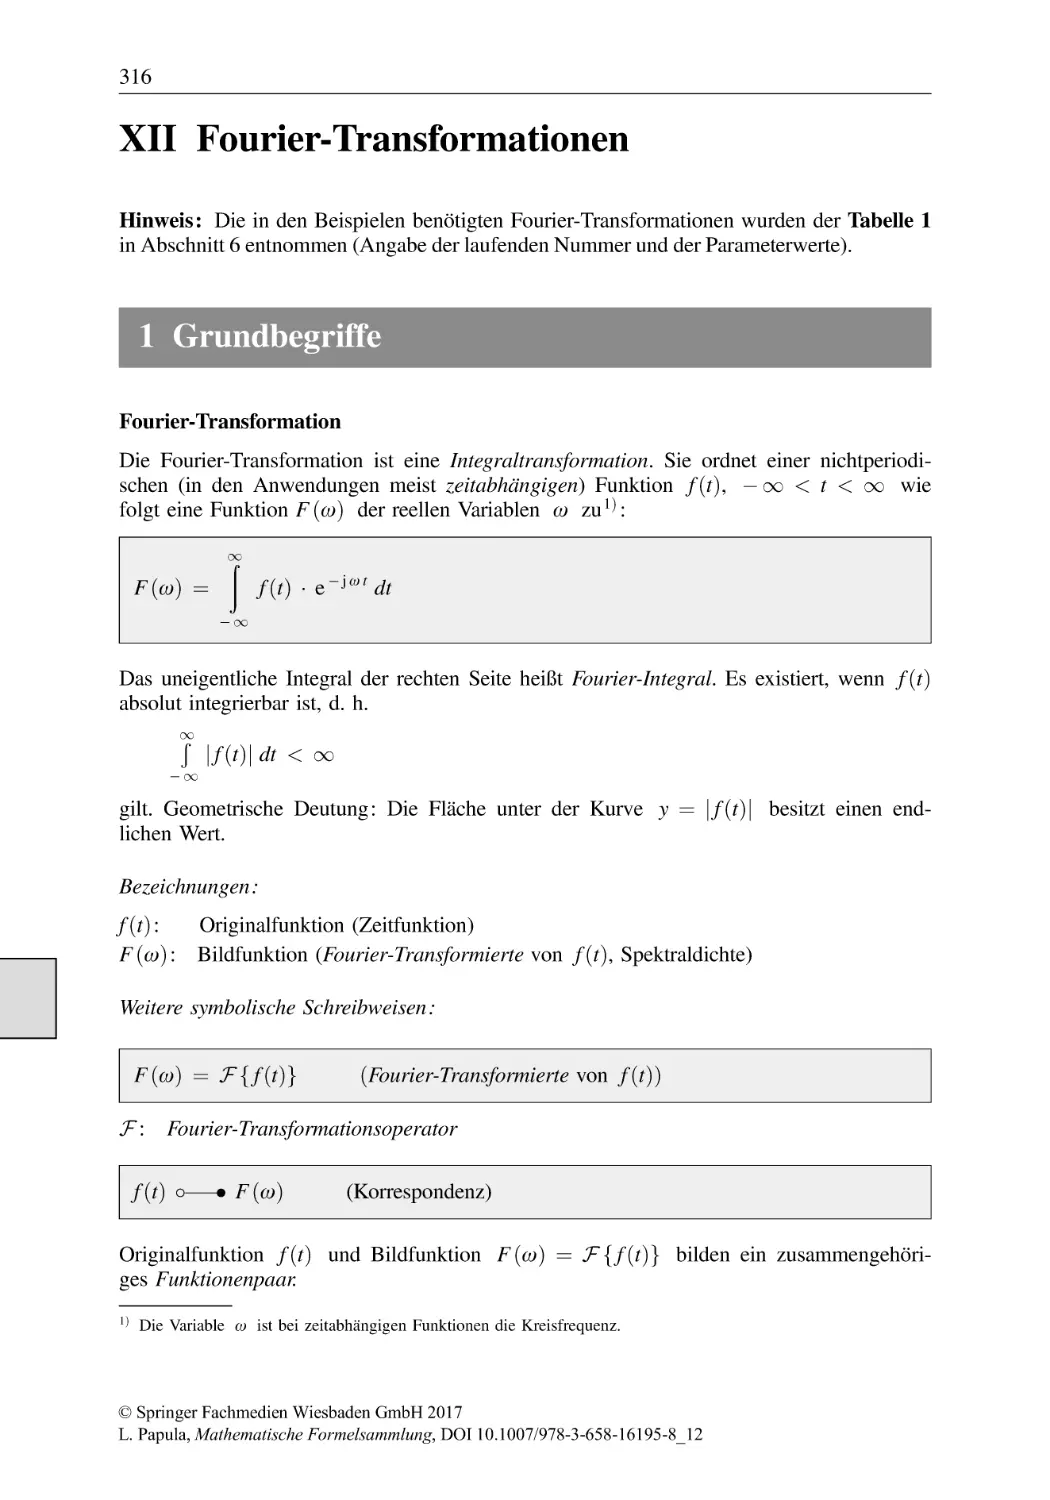 Fourier-Transformationen
1 Grundbegriffe